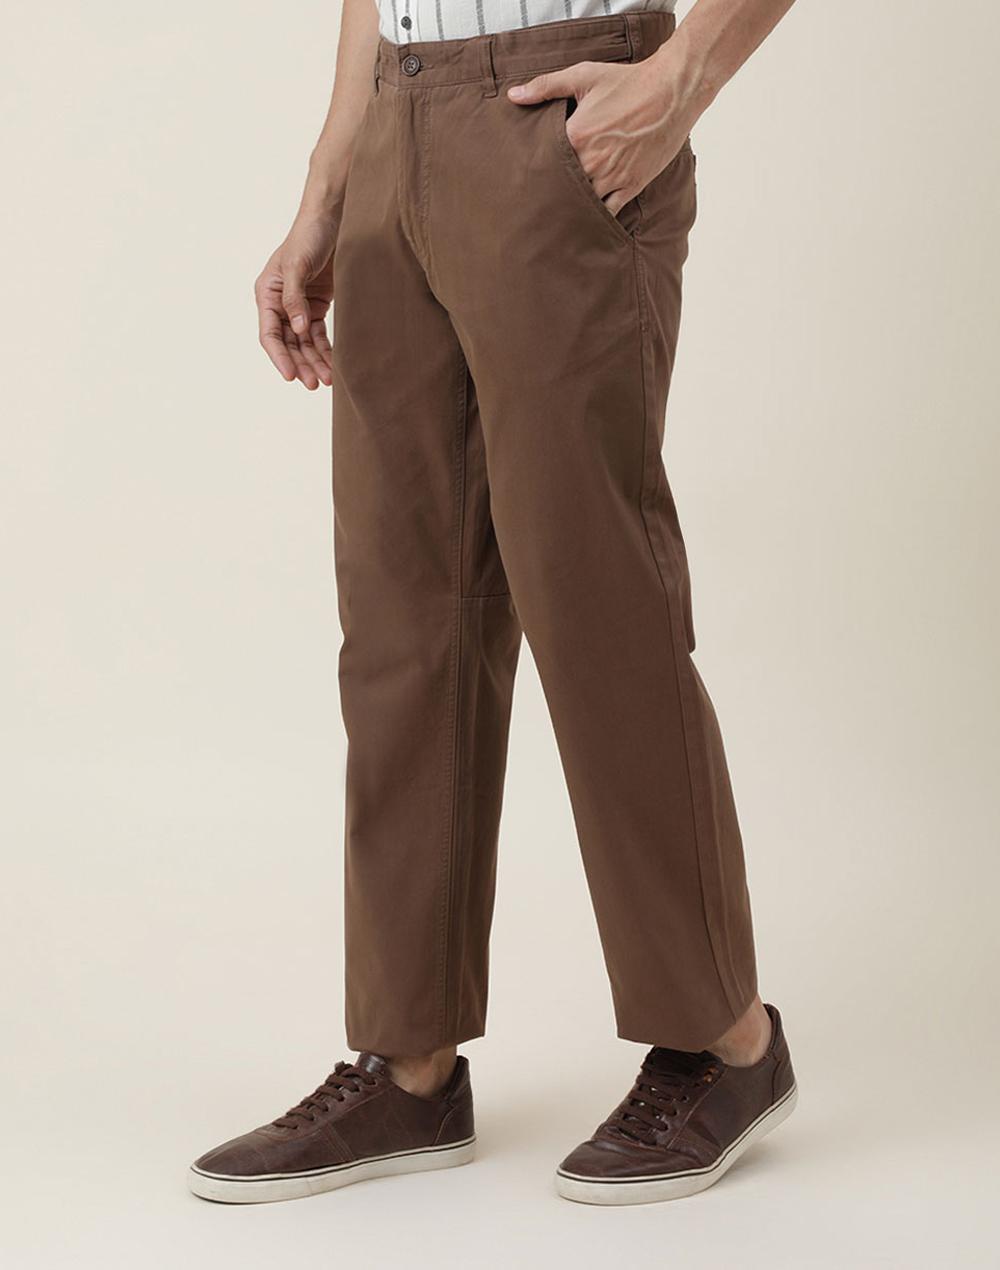 brown cotton pants